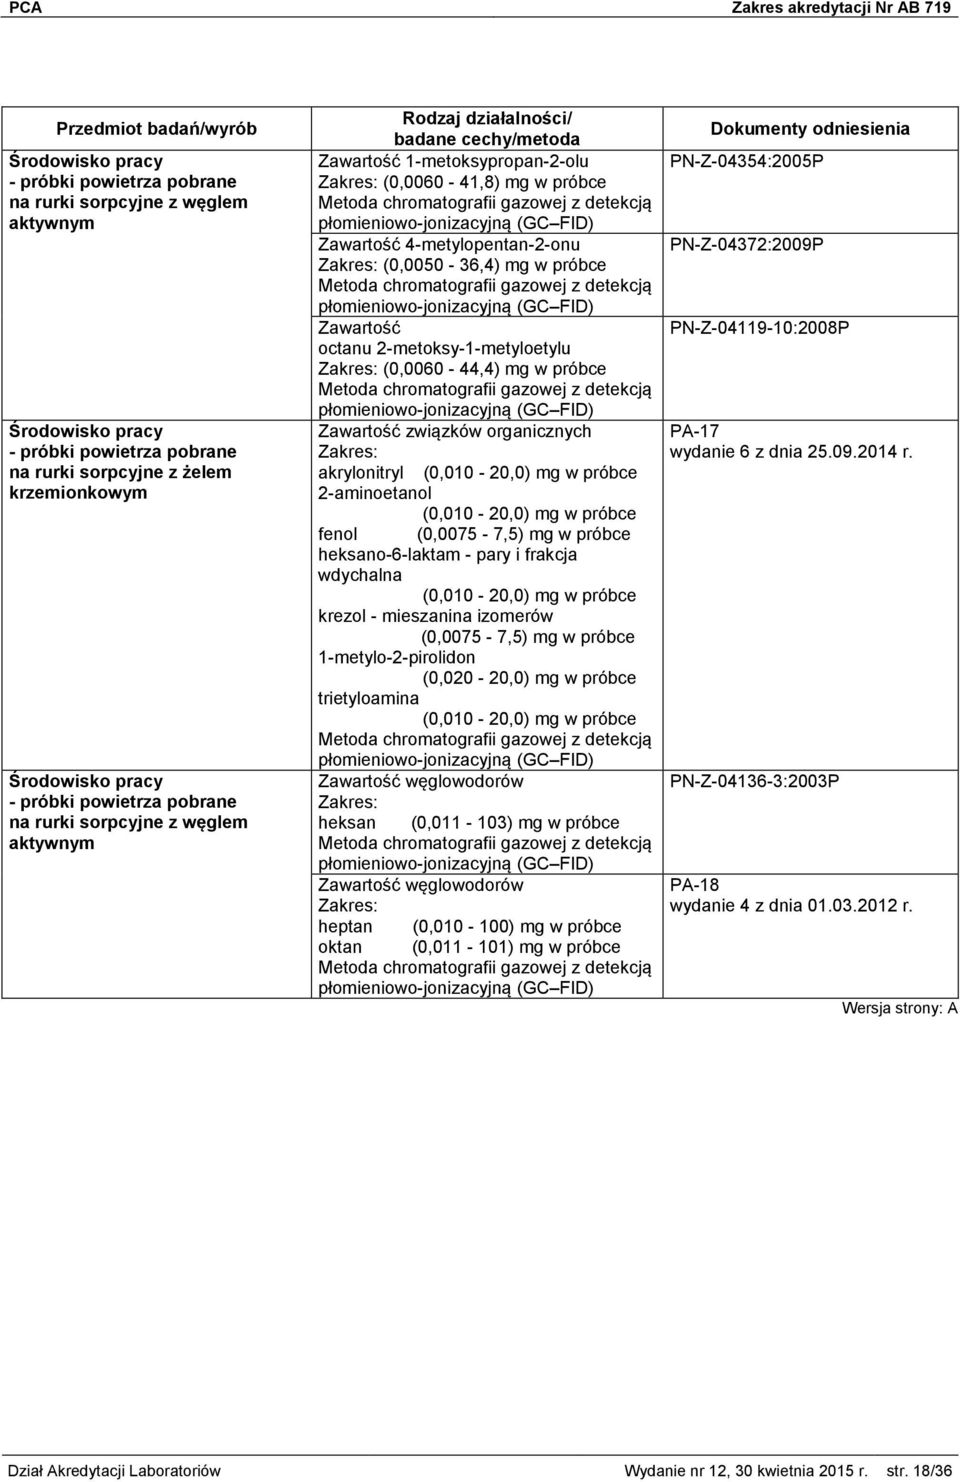 związków organicznych akrylonitryl (0,010-20,0) mg w próbce 2-aminoetanol (0,010-20,0) mg w próbce fenol (0,0075-7,5) mg w próbce heksano-6-laktam - pary i frakcja wdychalna (0,010-20,0) mg w próbce